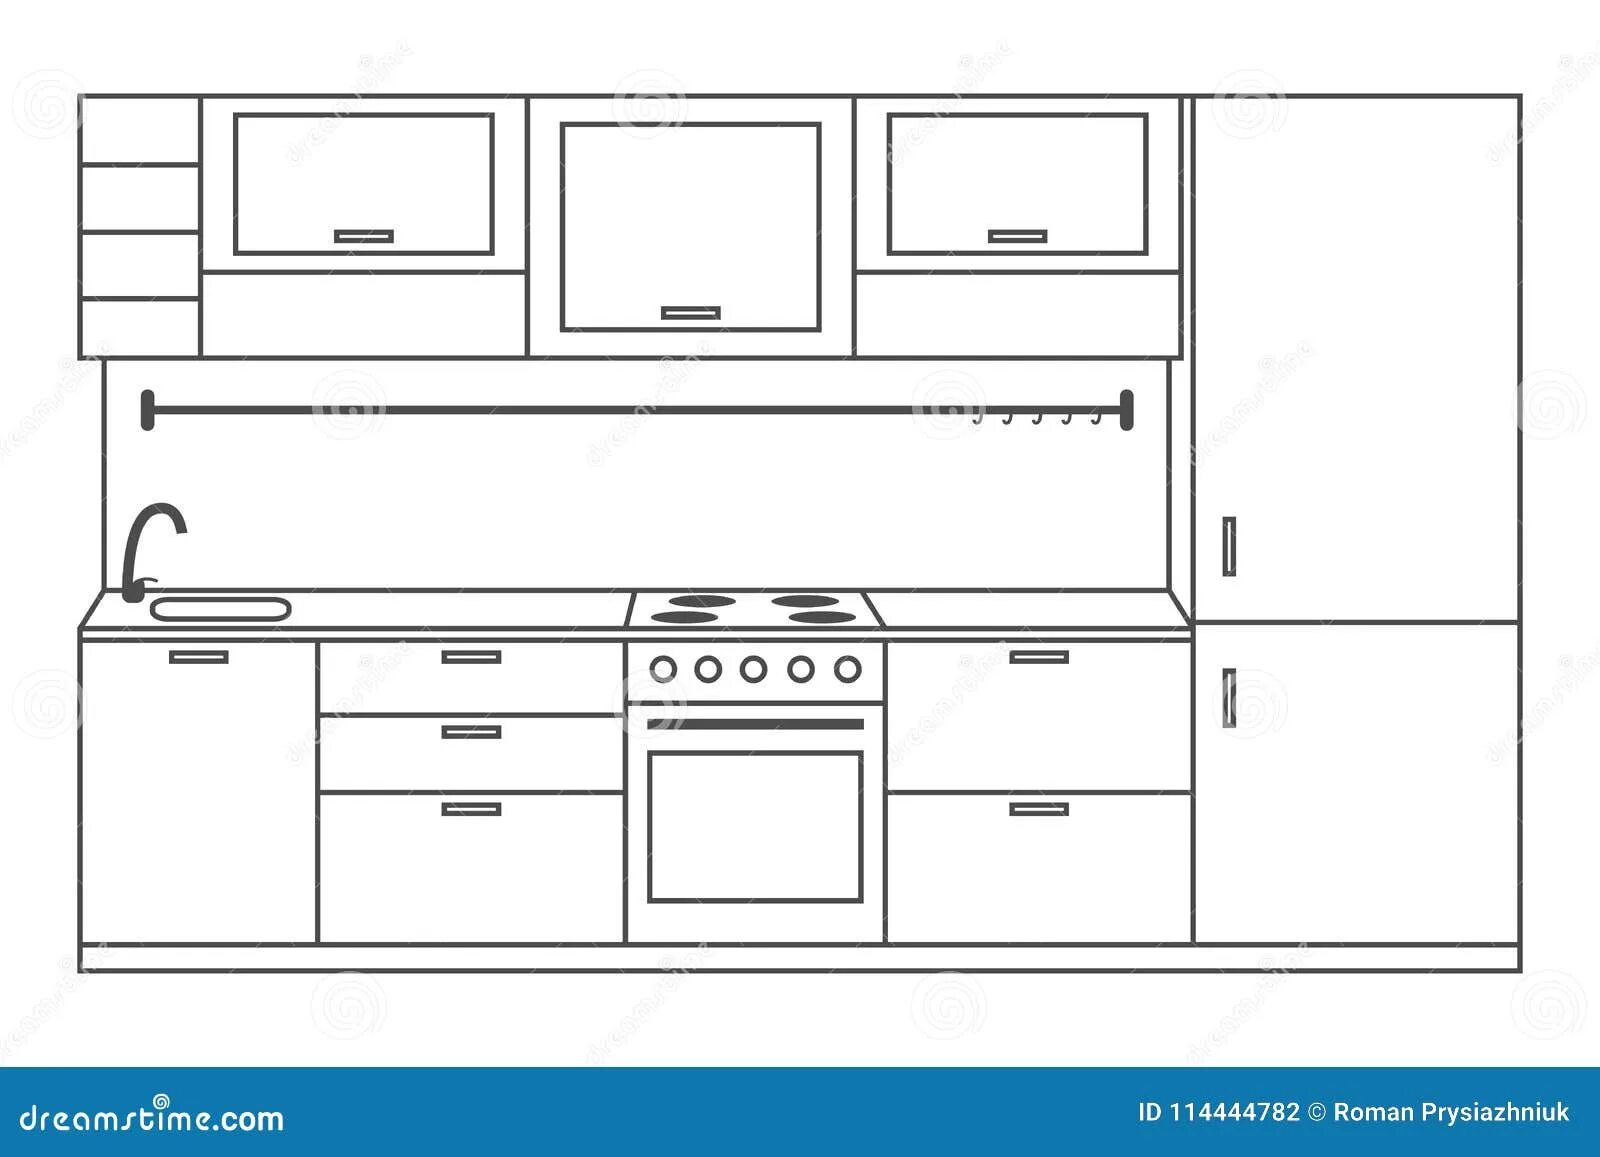 На рисунке изображены посудомоечная машина и холодильник. Кухня вид спереди. Кухня рисунок. Иллюстрации кухонных полок. Шкафчик кухонный нарисованный.